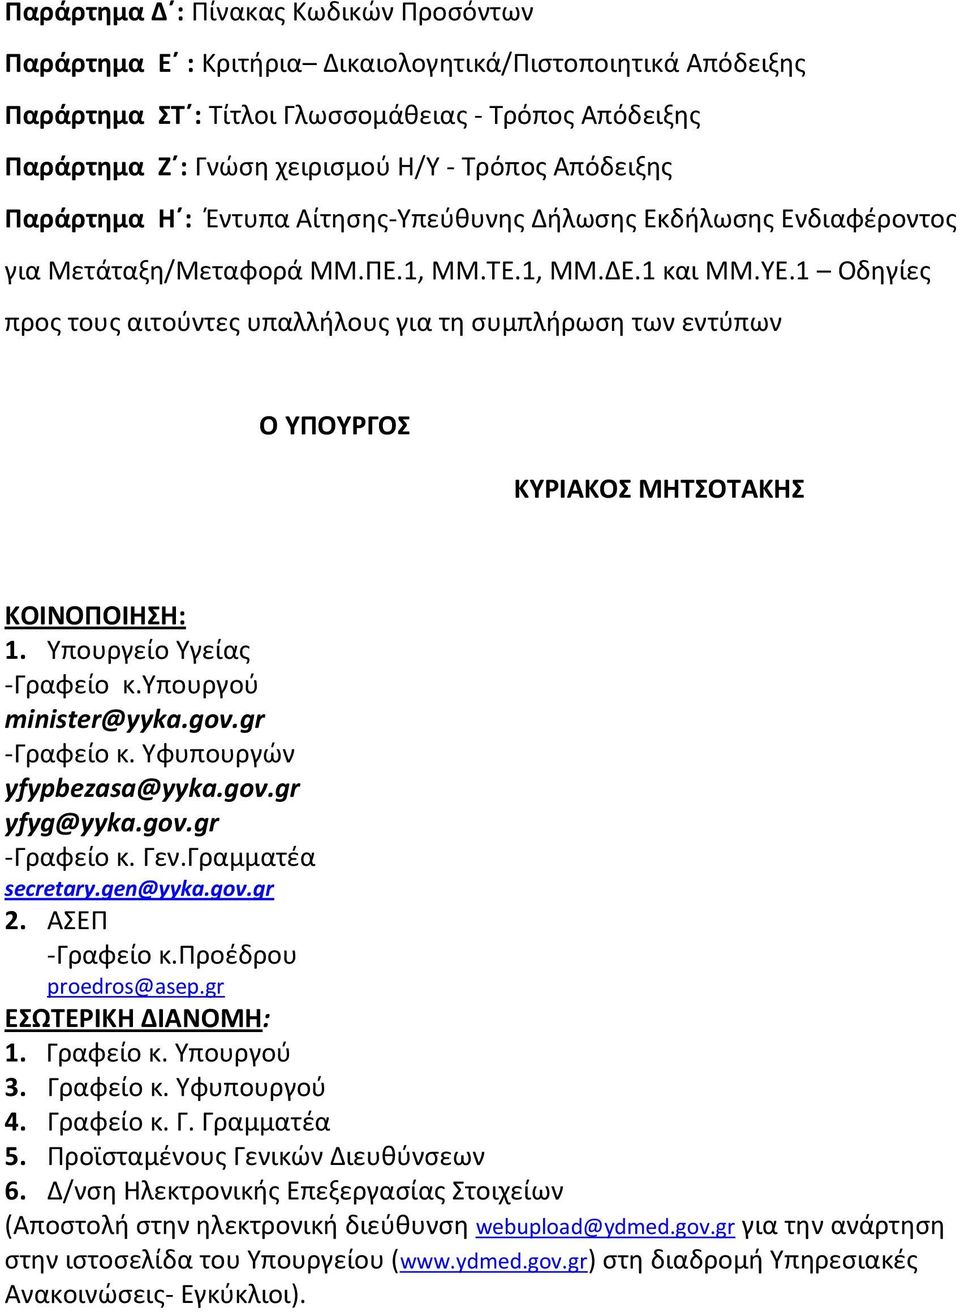 1 Οδθγίεσ προσ τουσ αιτοφντεσ υπαλλιλουσ για τθ ςυμπλιρωςθ των εντφπων O ΤΠΟΤΡΓΟ ΚΤΡΙΑΚΟ ΜΗΣΟΣΑΚΗ ΚΟΙΝΟΠΟΙΗΗ: 1. Τπουργείο Τγείασ -Γραφείο κ.τπουργοφ minister@yyka.gov.gr -Γραφείο κ.